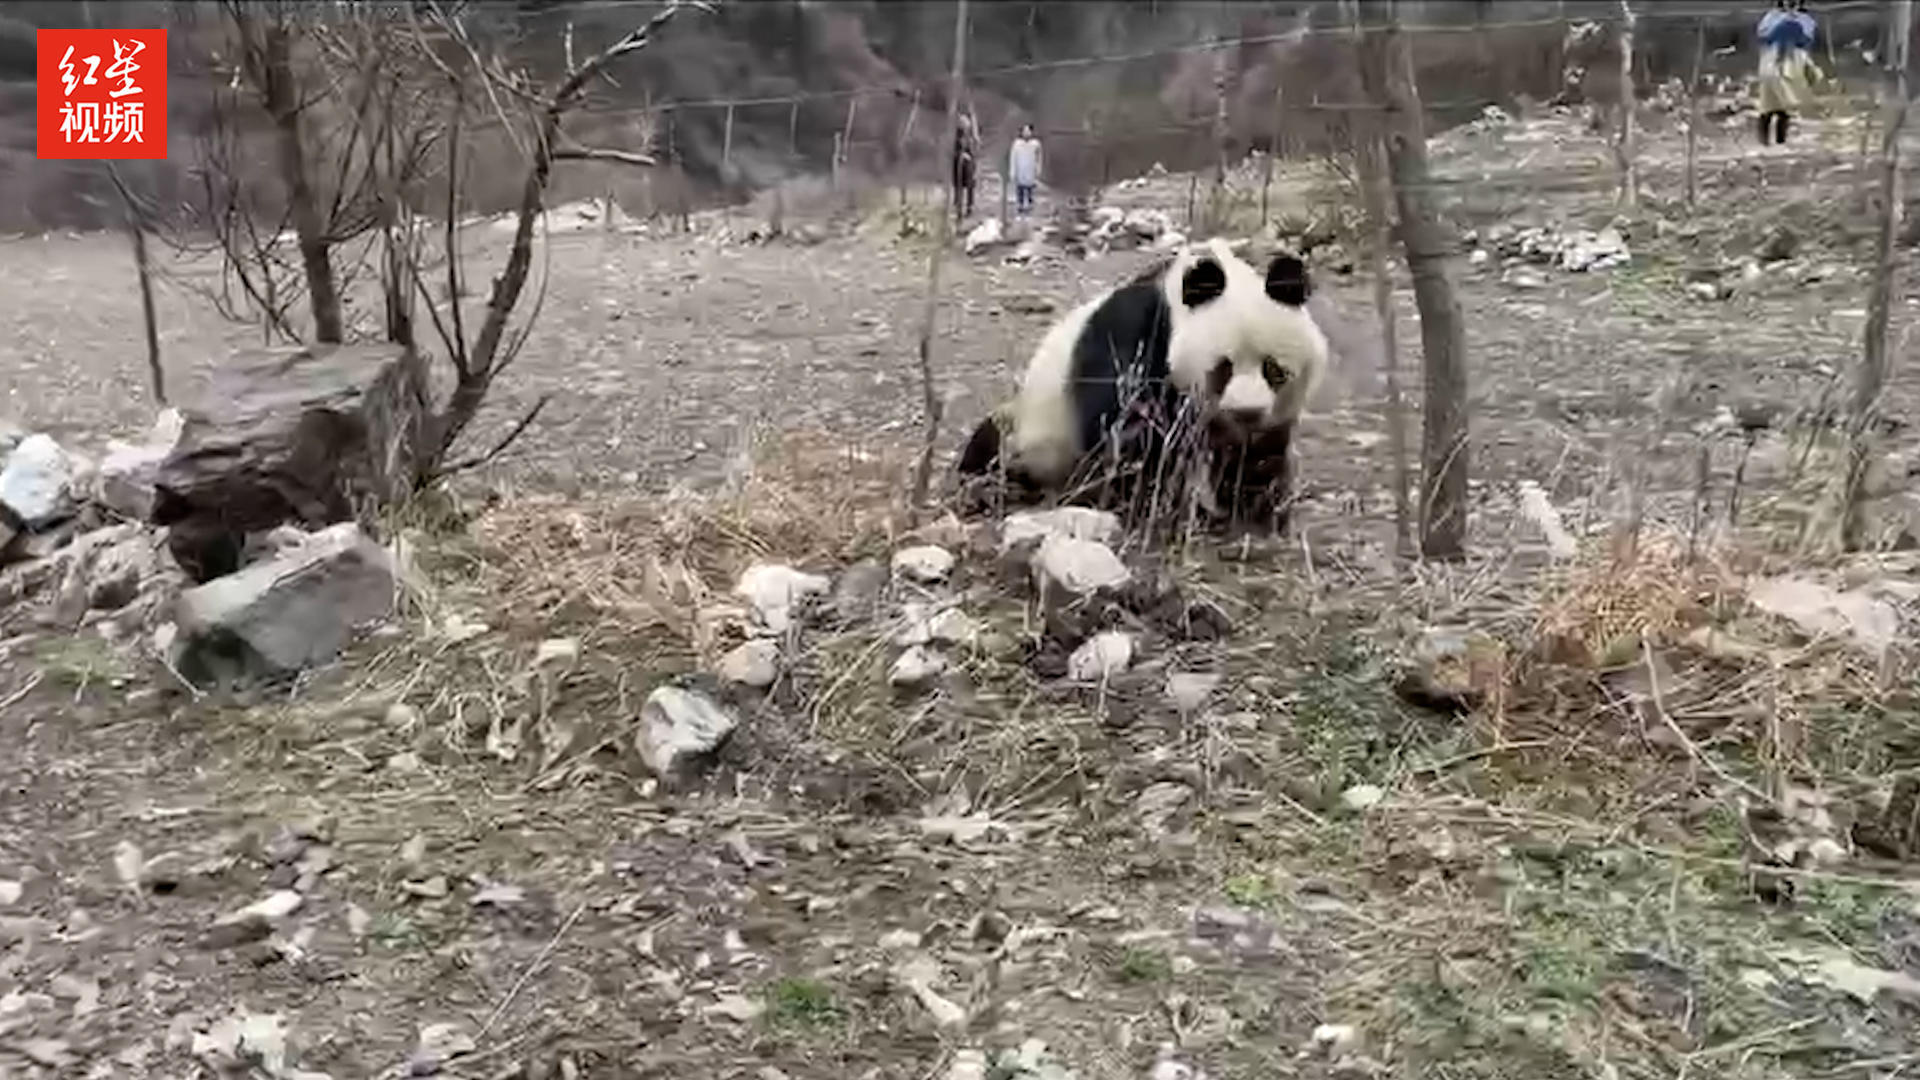 黄龙野生大熊猫悠然下山 村民近距离拍照围观